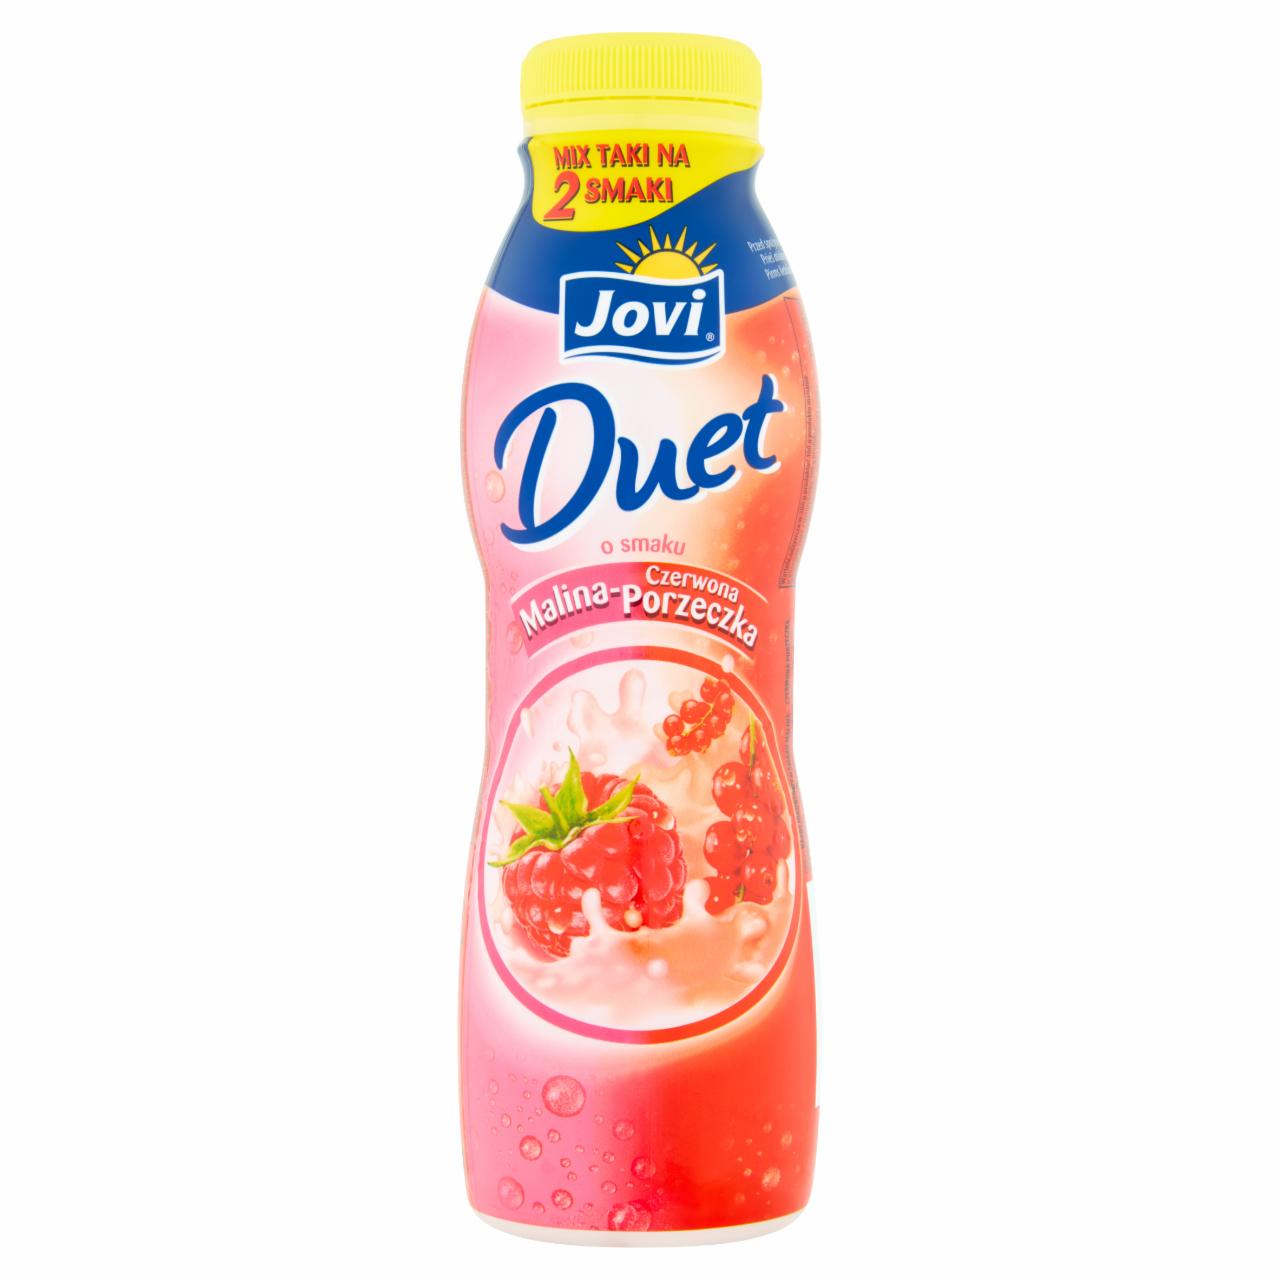 Zdjęcia - Jovi Duet Napój jogurtowy o smaku malina-czerwona porzeczka 350 g